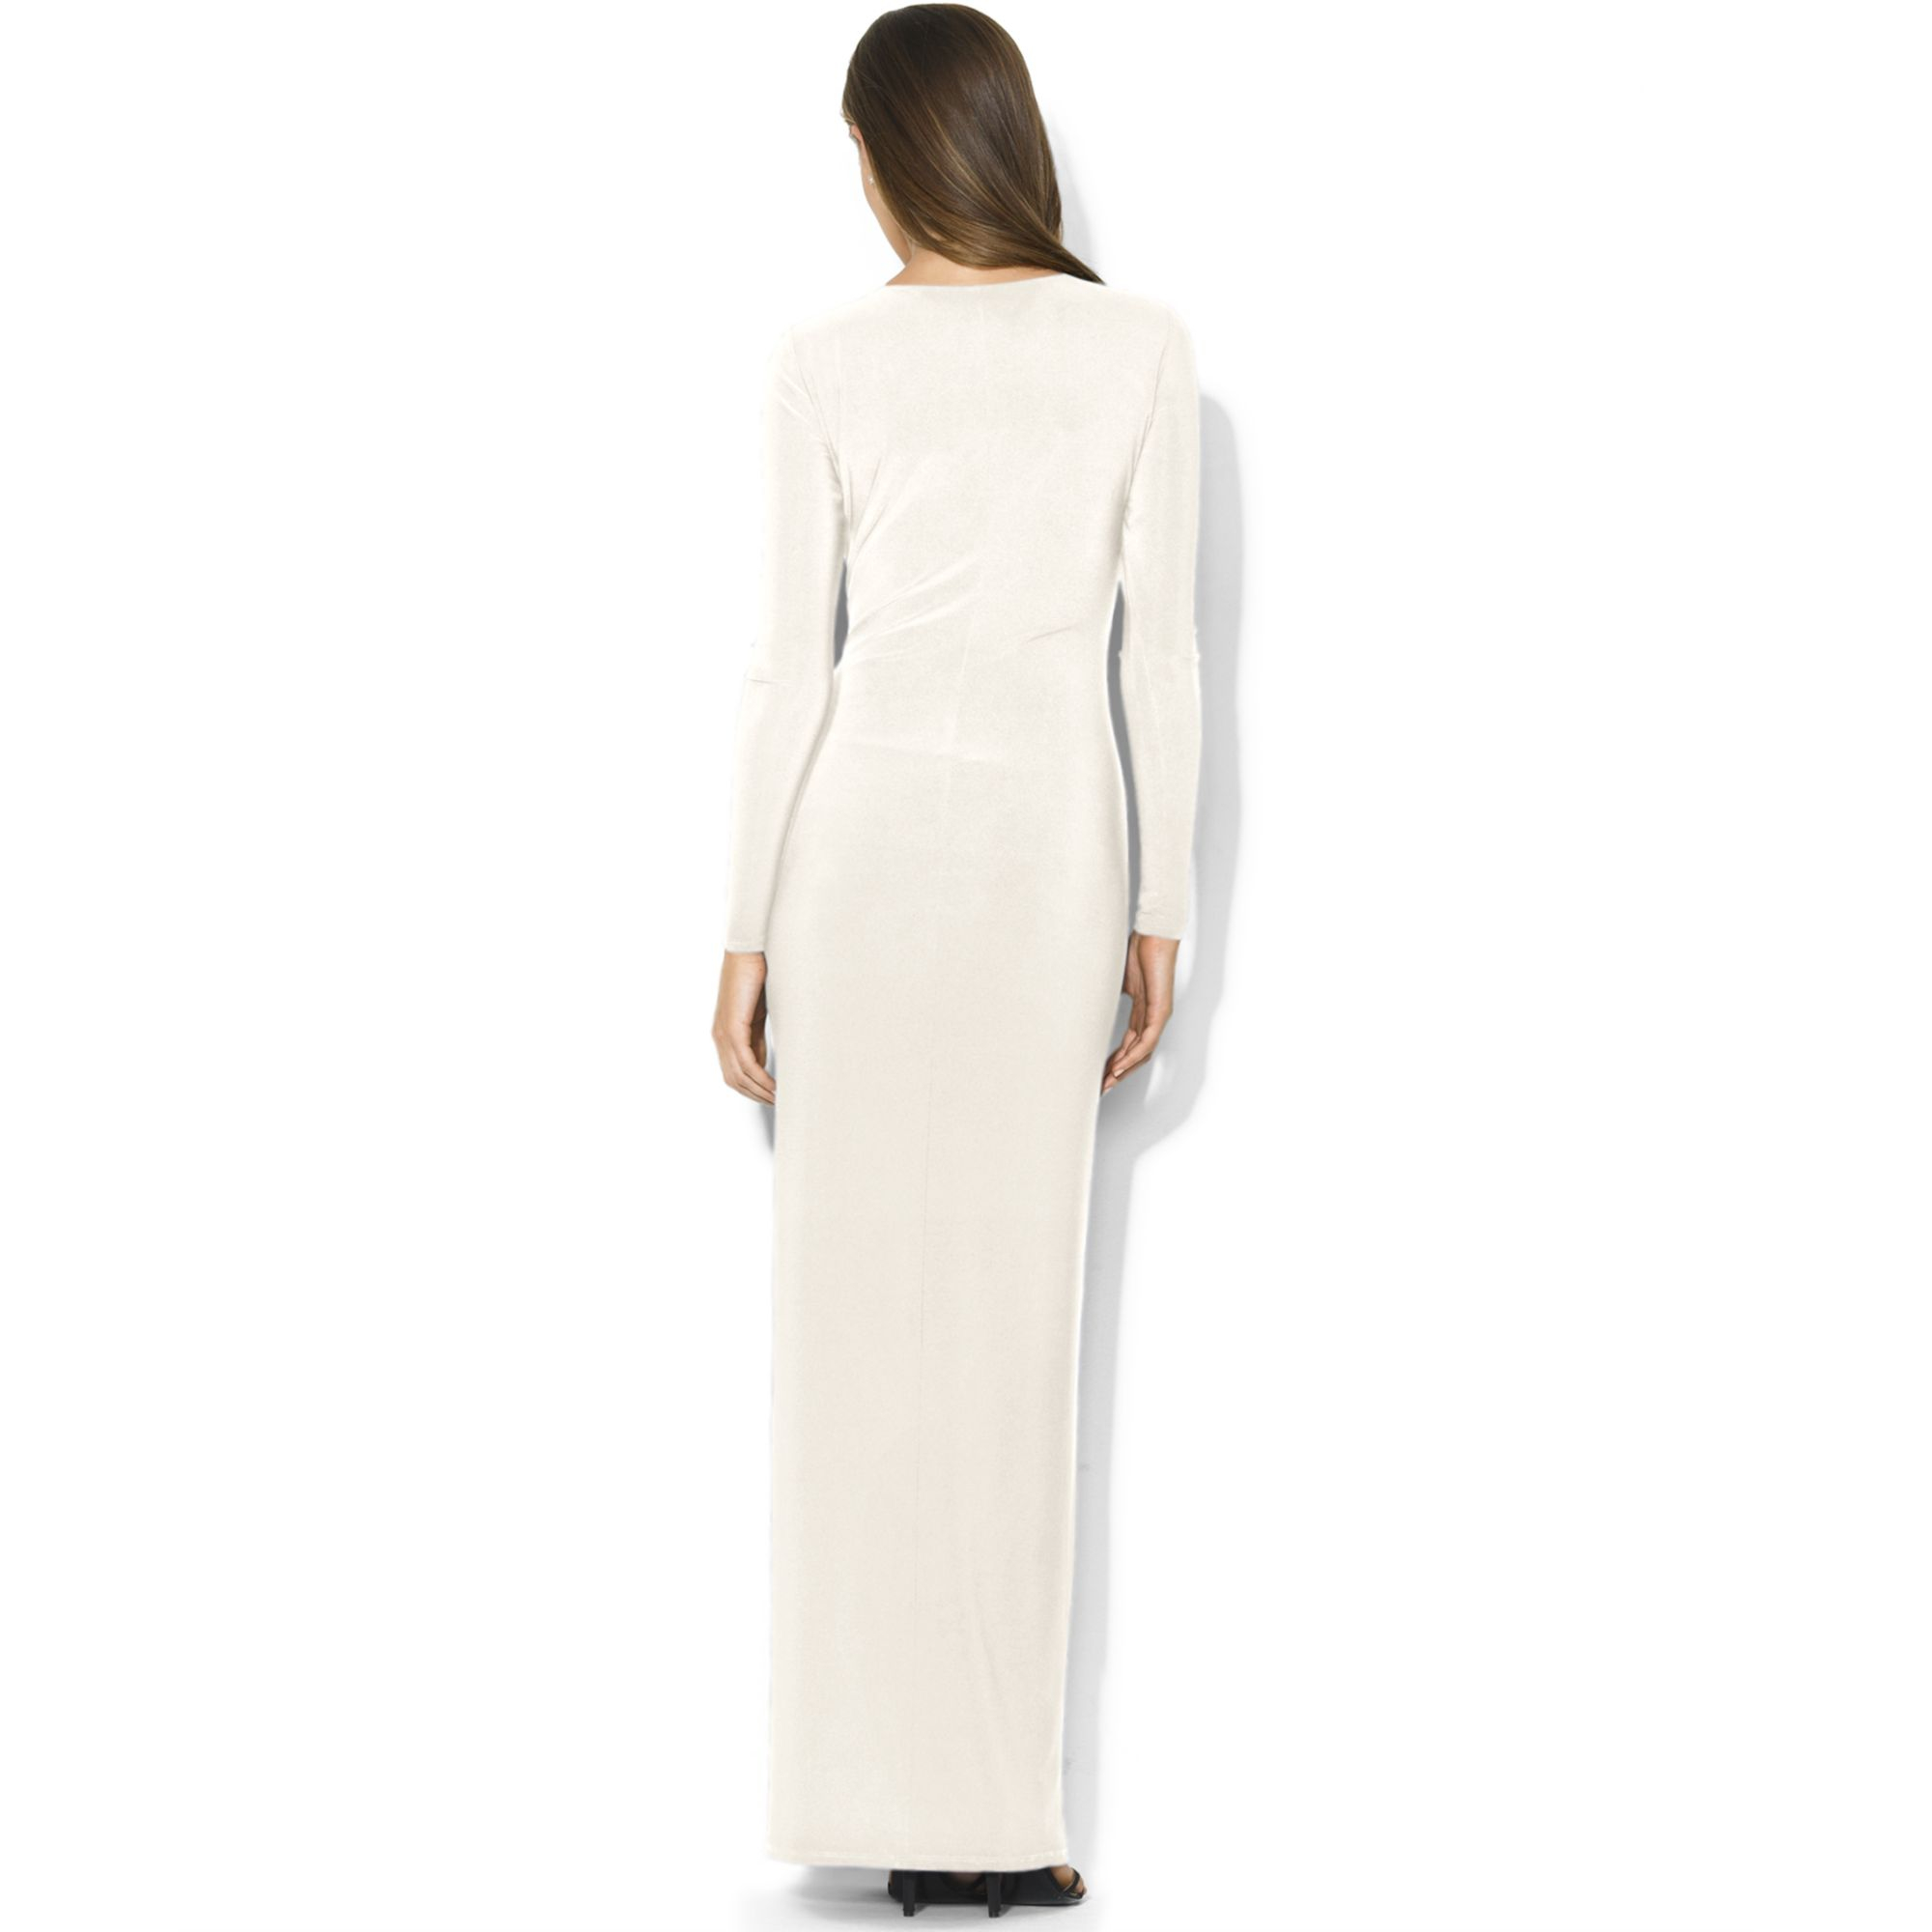 Lauren by Ralph Lauren Longsleeve Draped Brooch Dress in White | Lyst